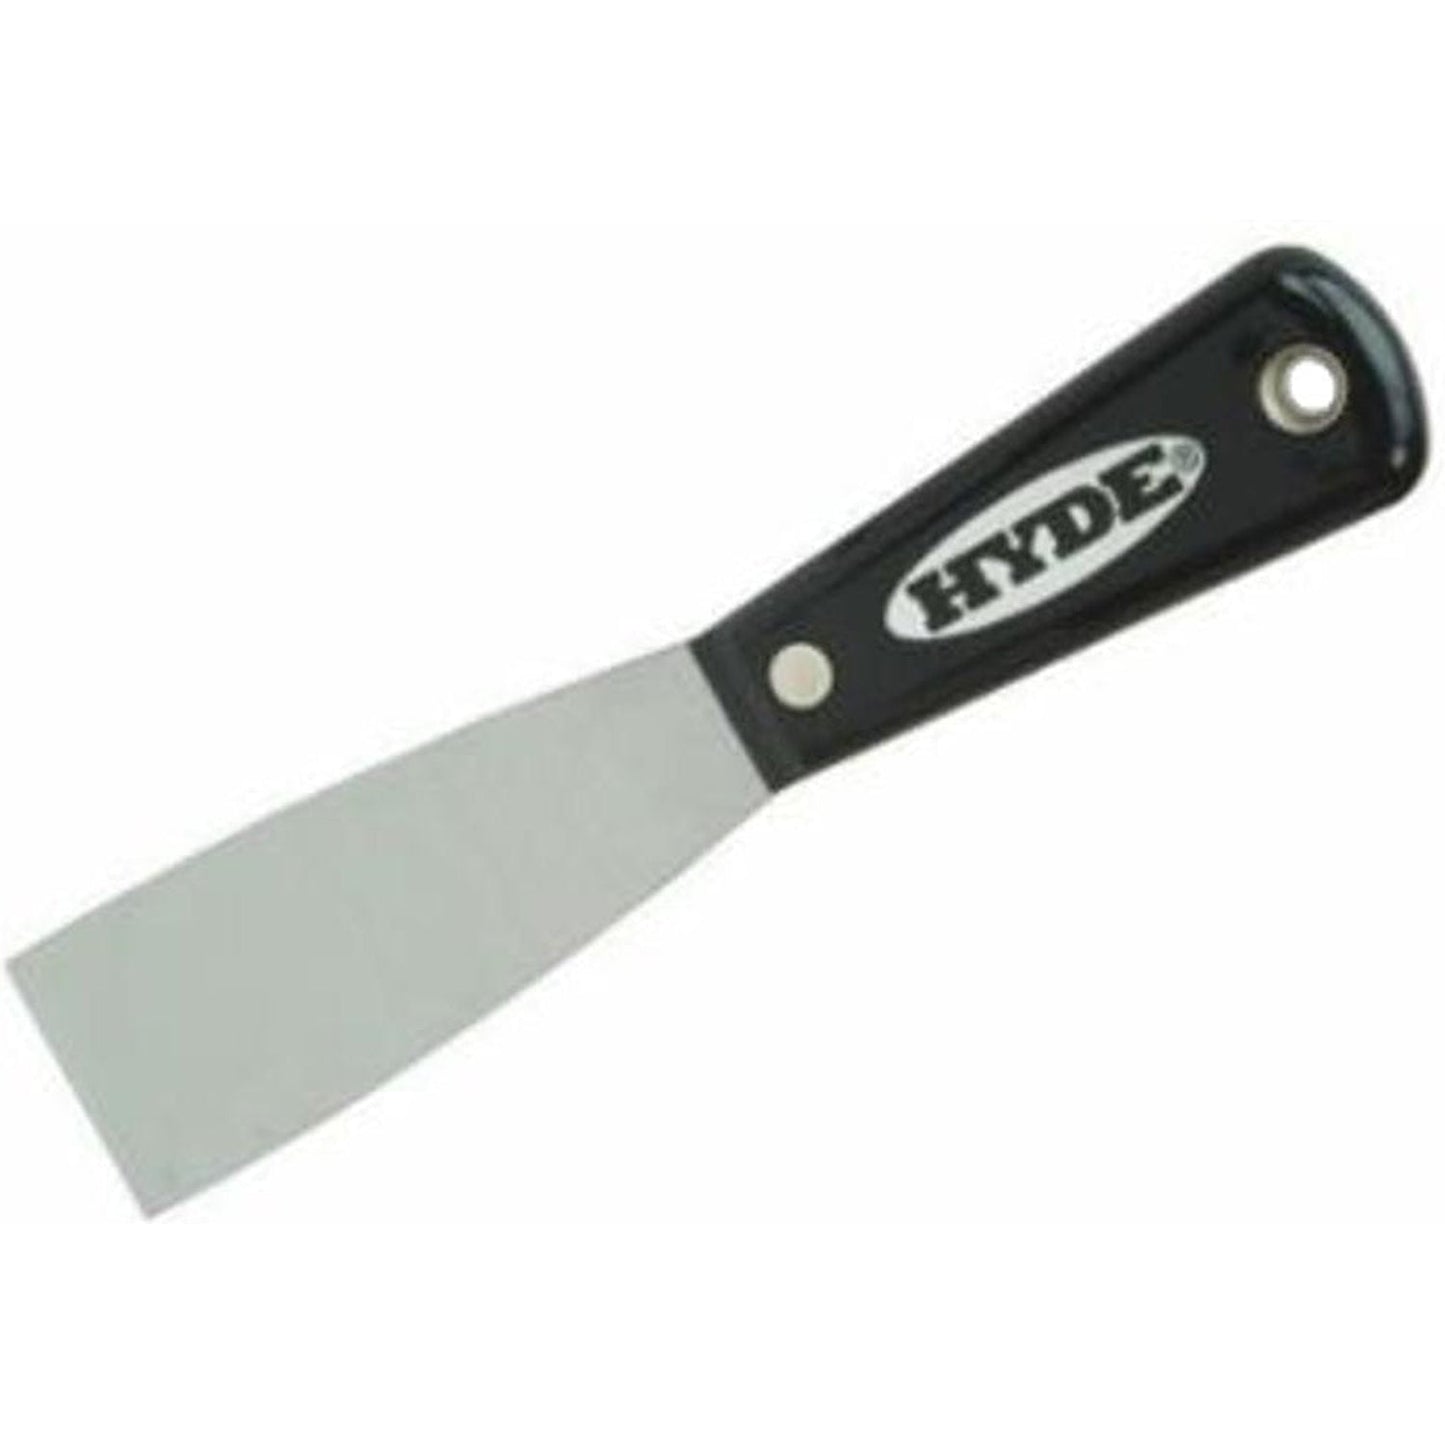 Hyde 02150 Stiff Carbon Steel Putty Knife / Scraper 38mm (1-1/2")